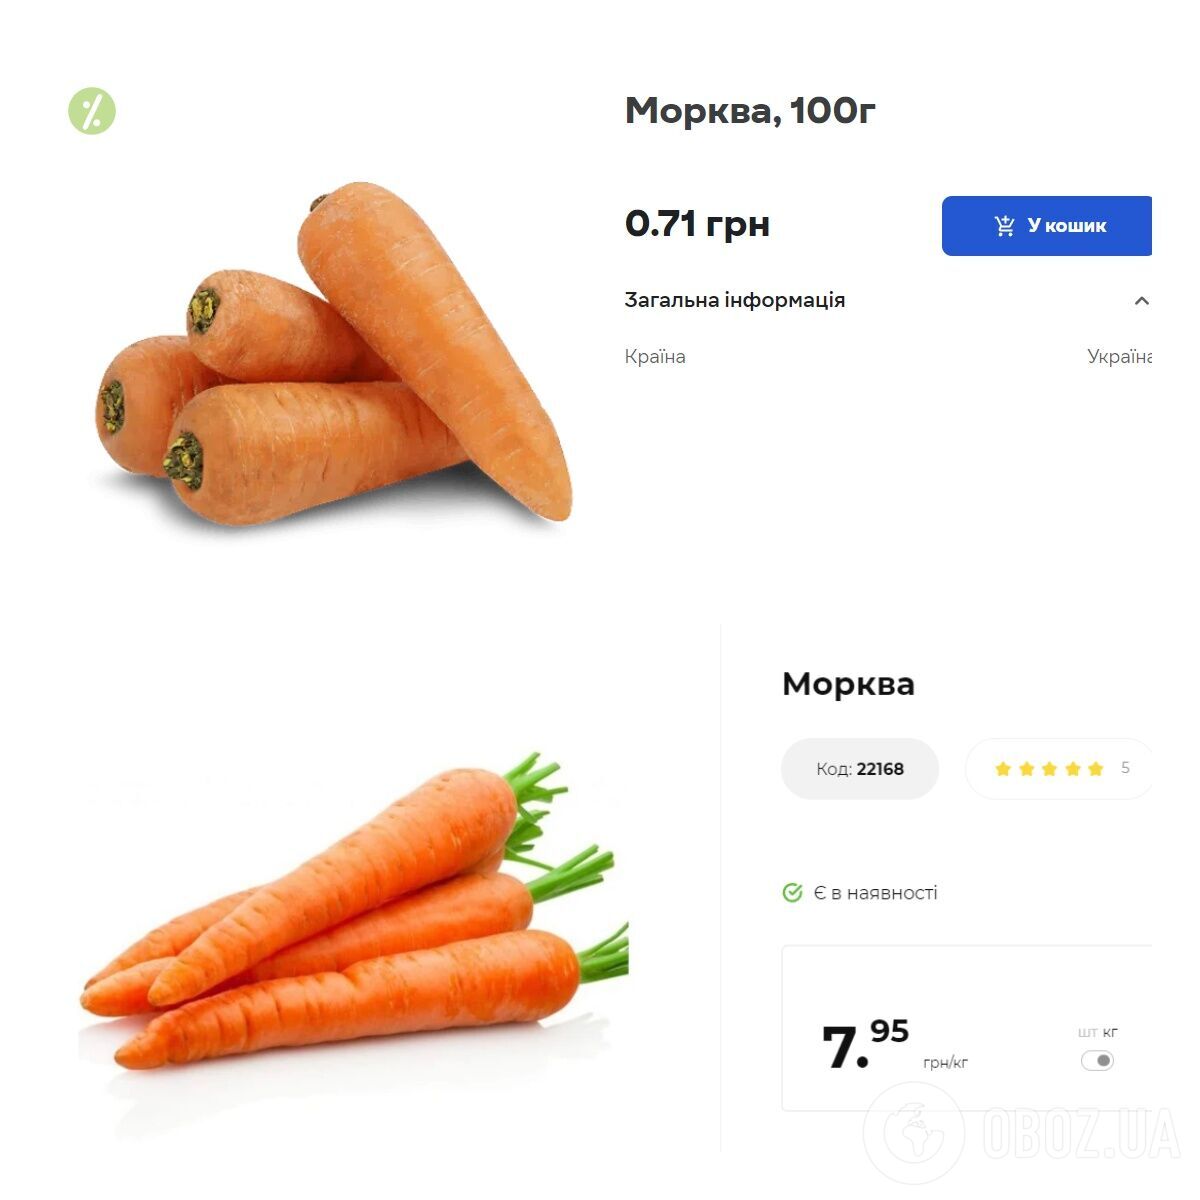 Цена моркови в Сильпо и АТБ